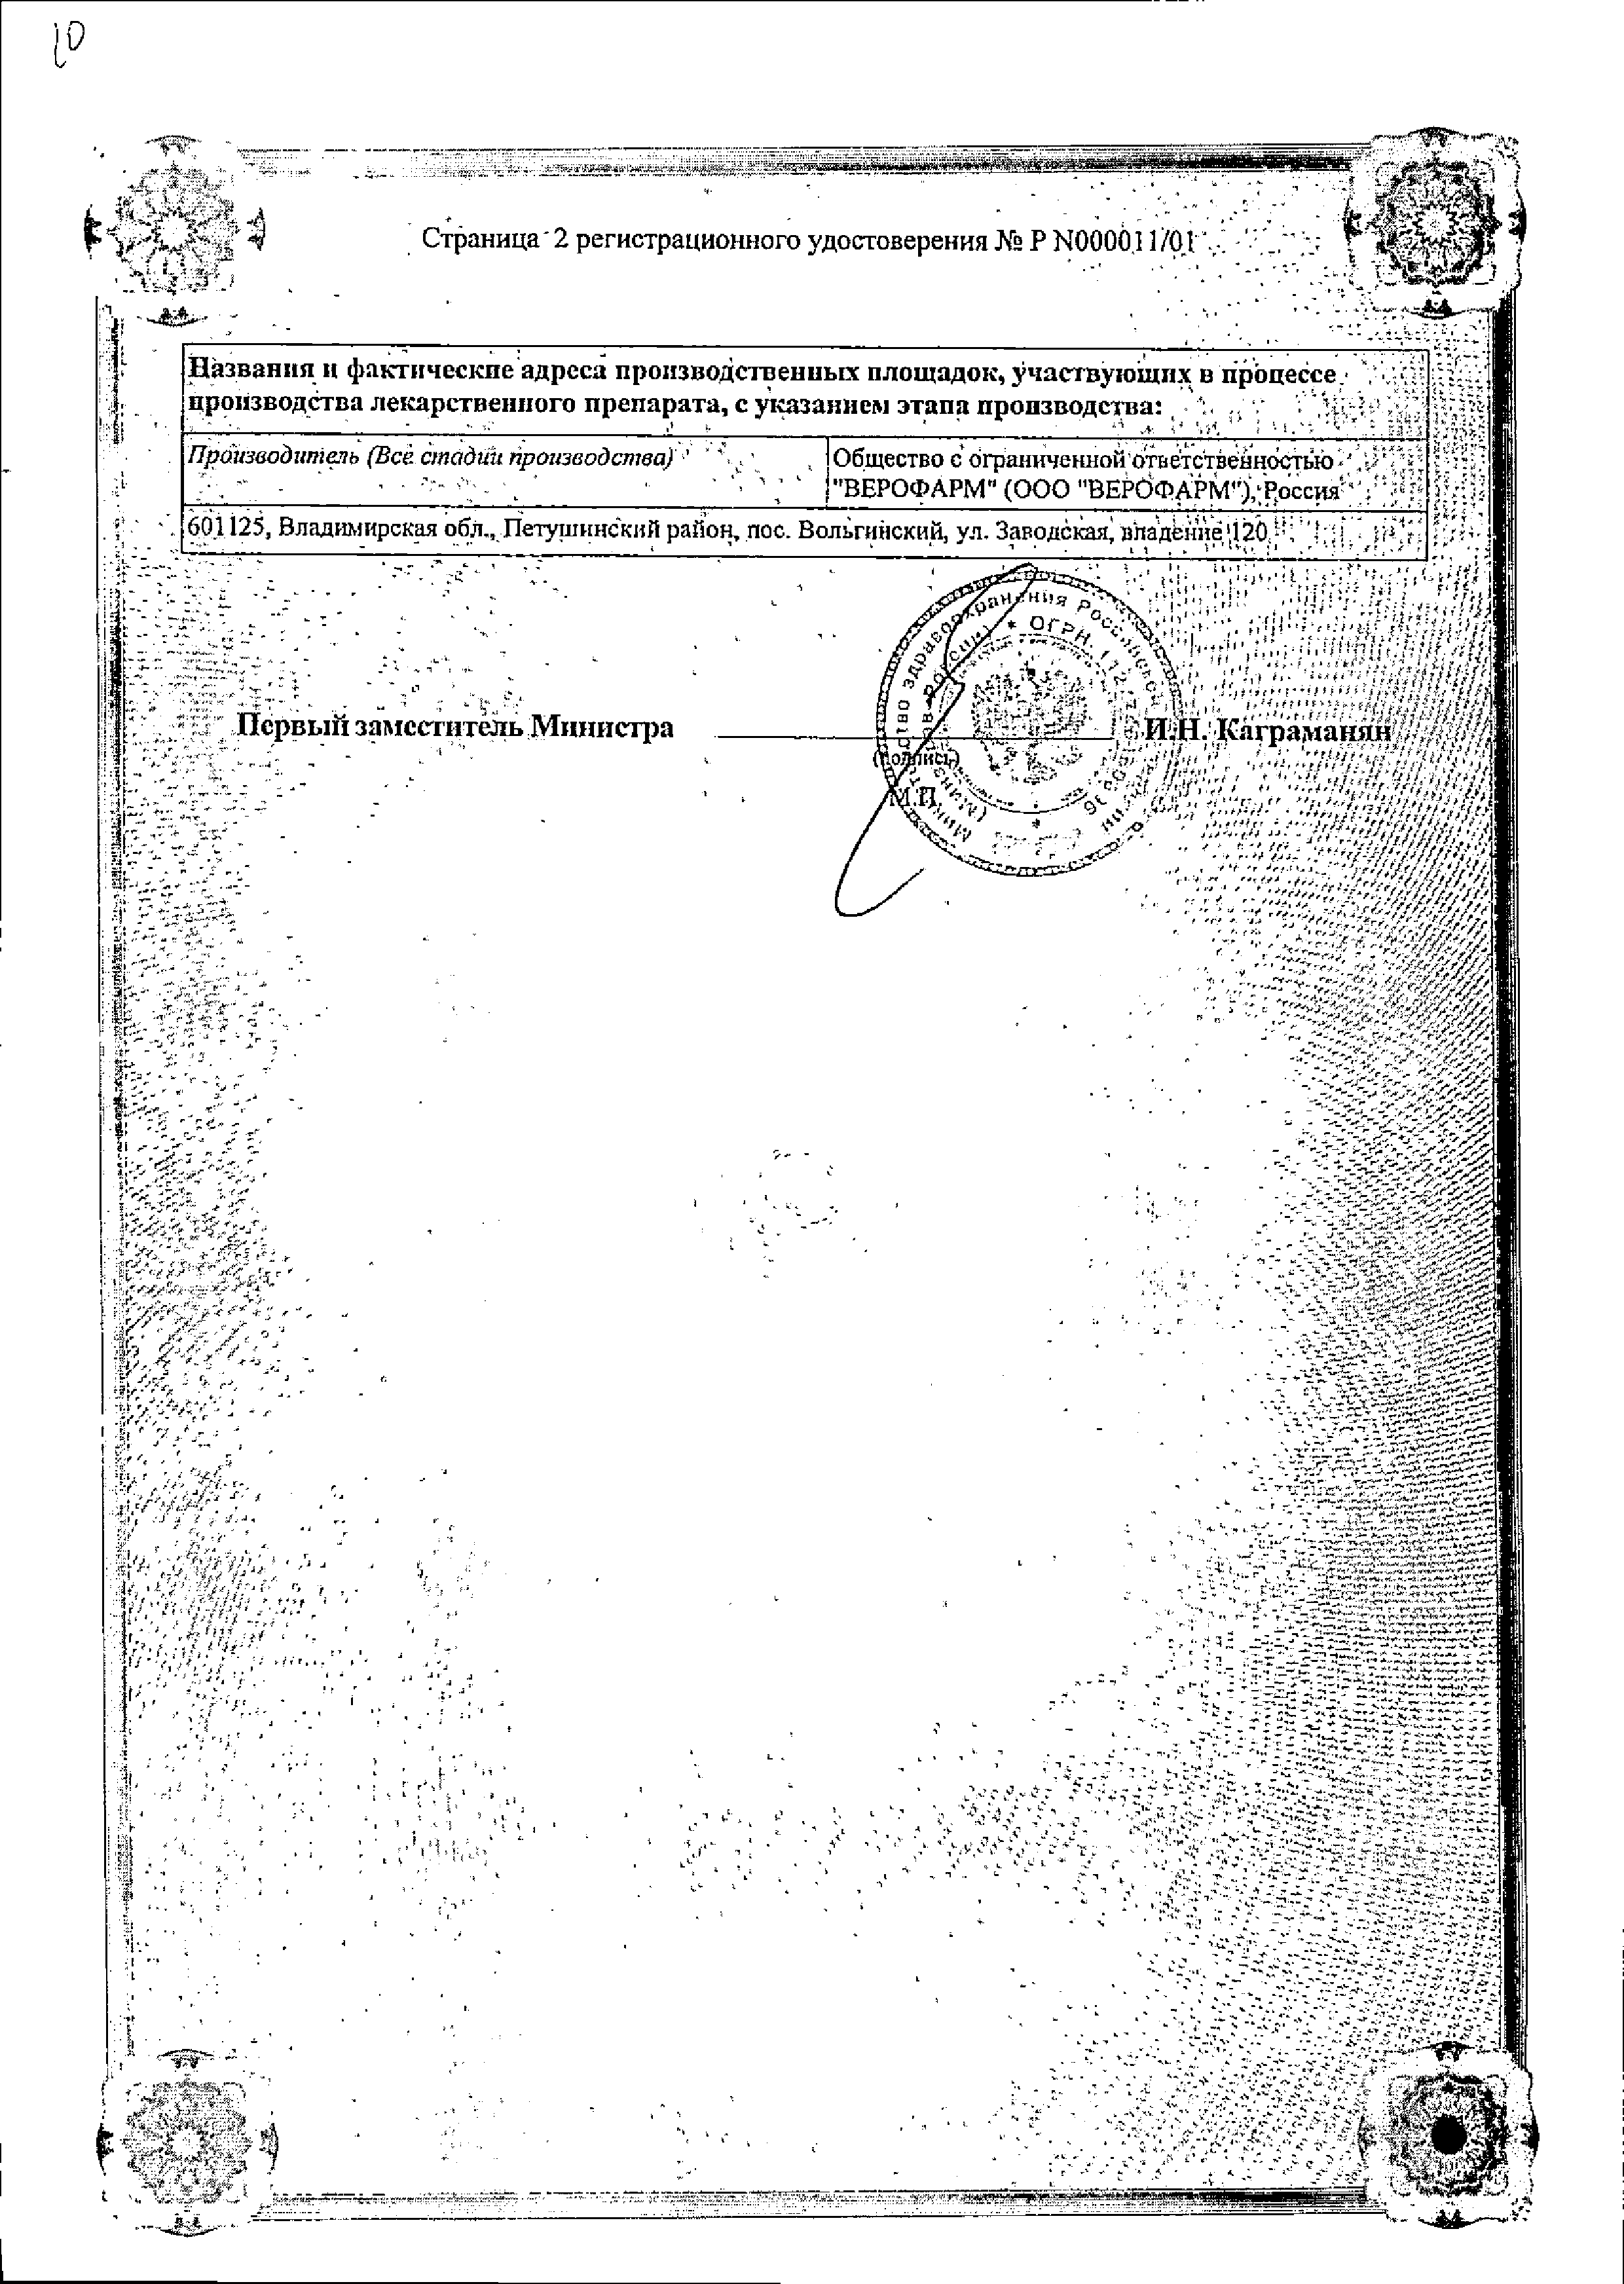 Фторурацил-ЛЭНС сертификат